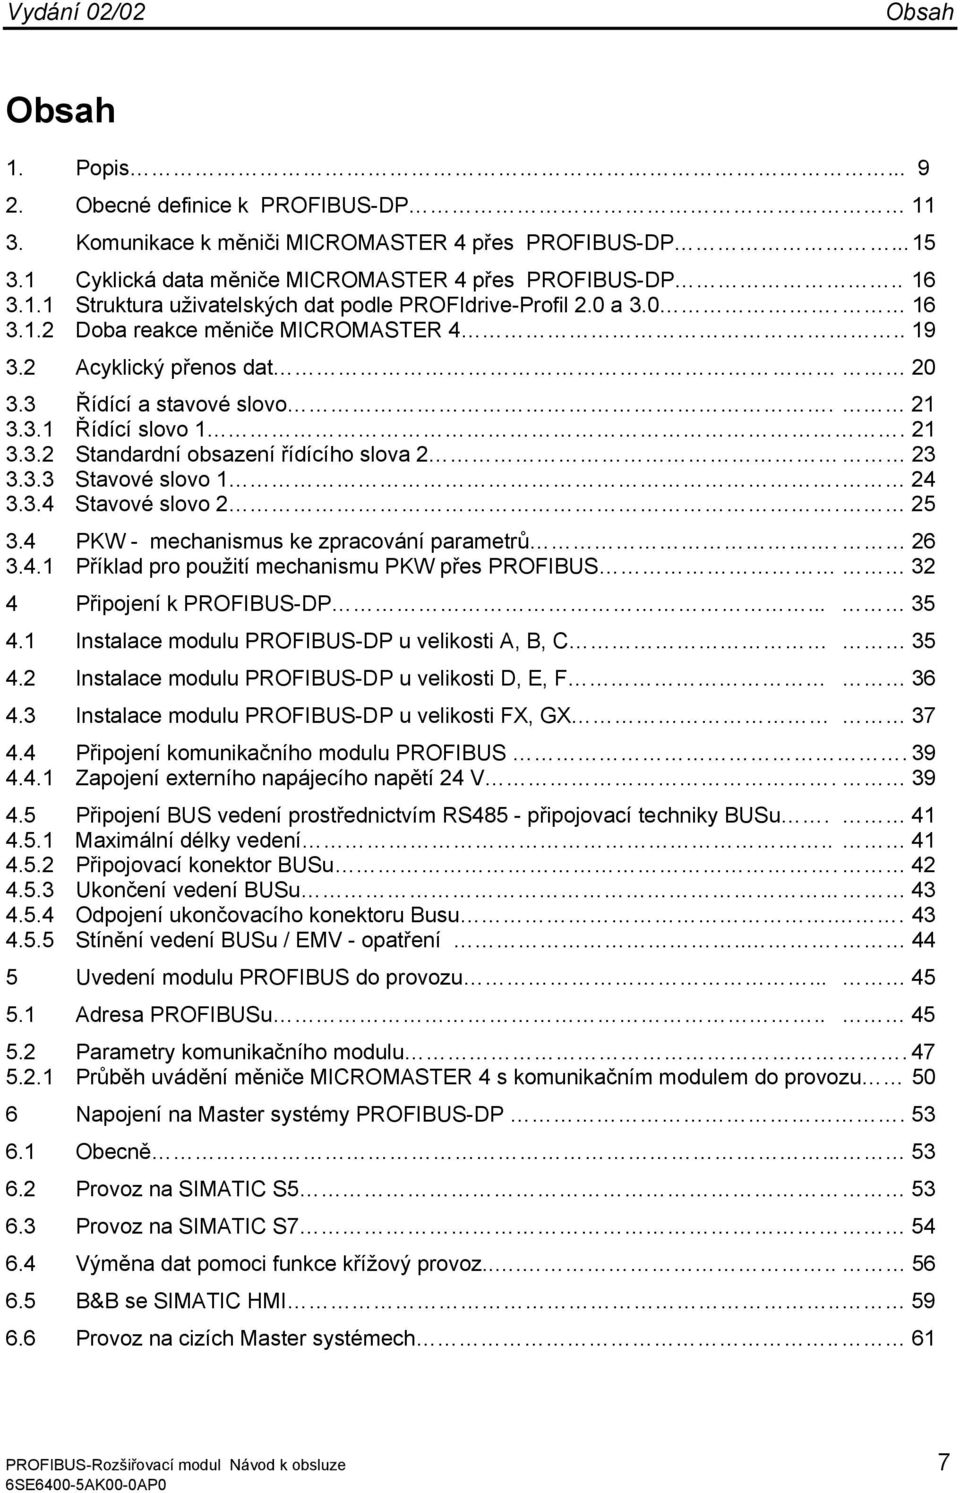 24 3.3.4 Stavové slovo 2. 25 3.4 PKW - mechanismus ke zpracování parametrů. 26 3.4.1 Příklad pro použití mechanismu PKW přes PROFIBUS 32 4 Připojení k PROFIBUS-DP... 35 4.